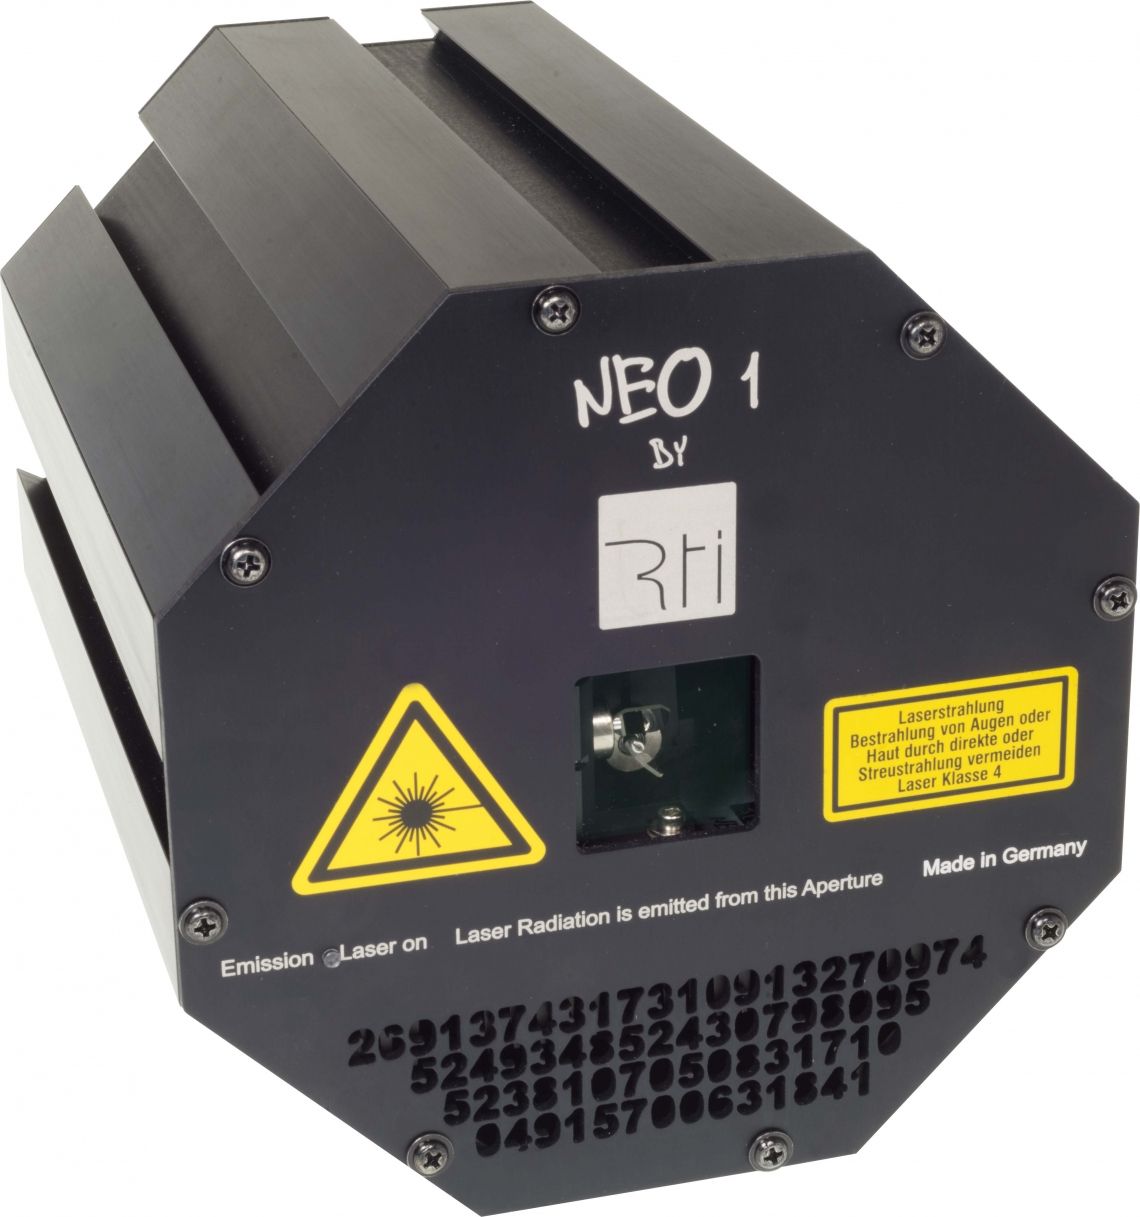 Bild zu Modulare RTI NEO ONE Lasersysteme vorgestellt